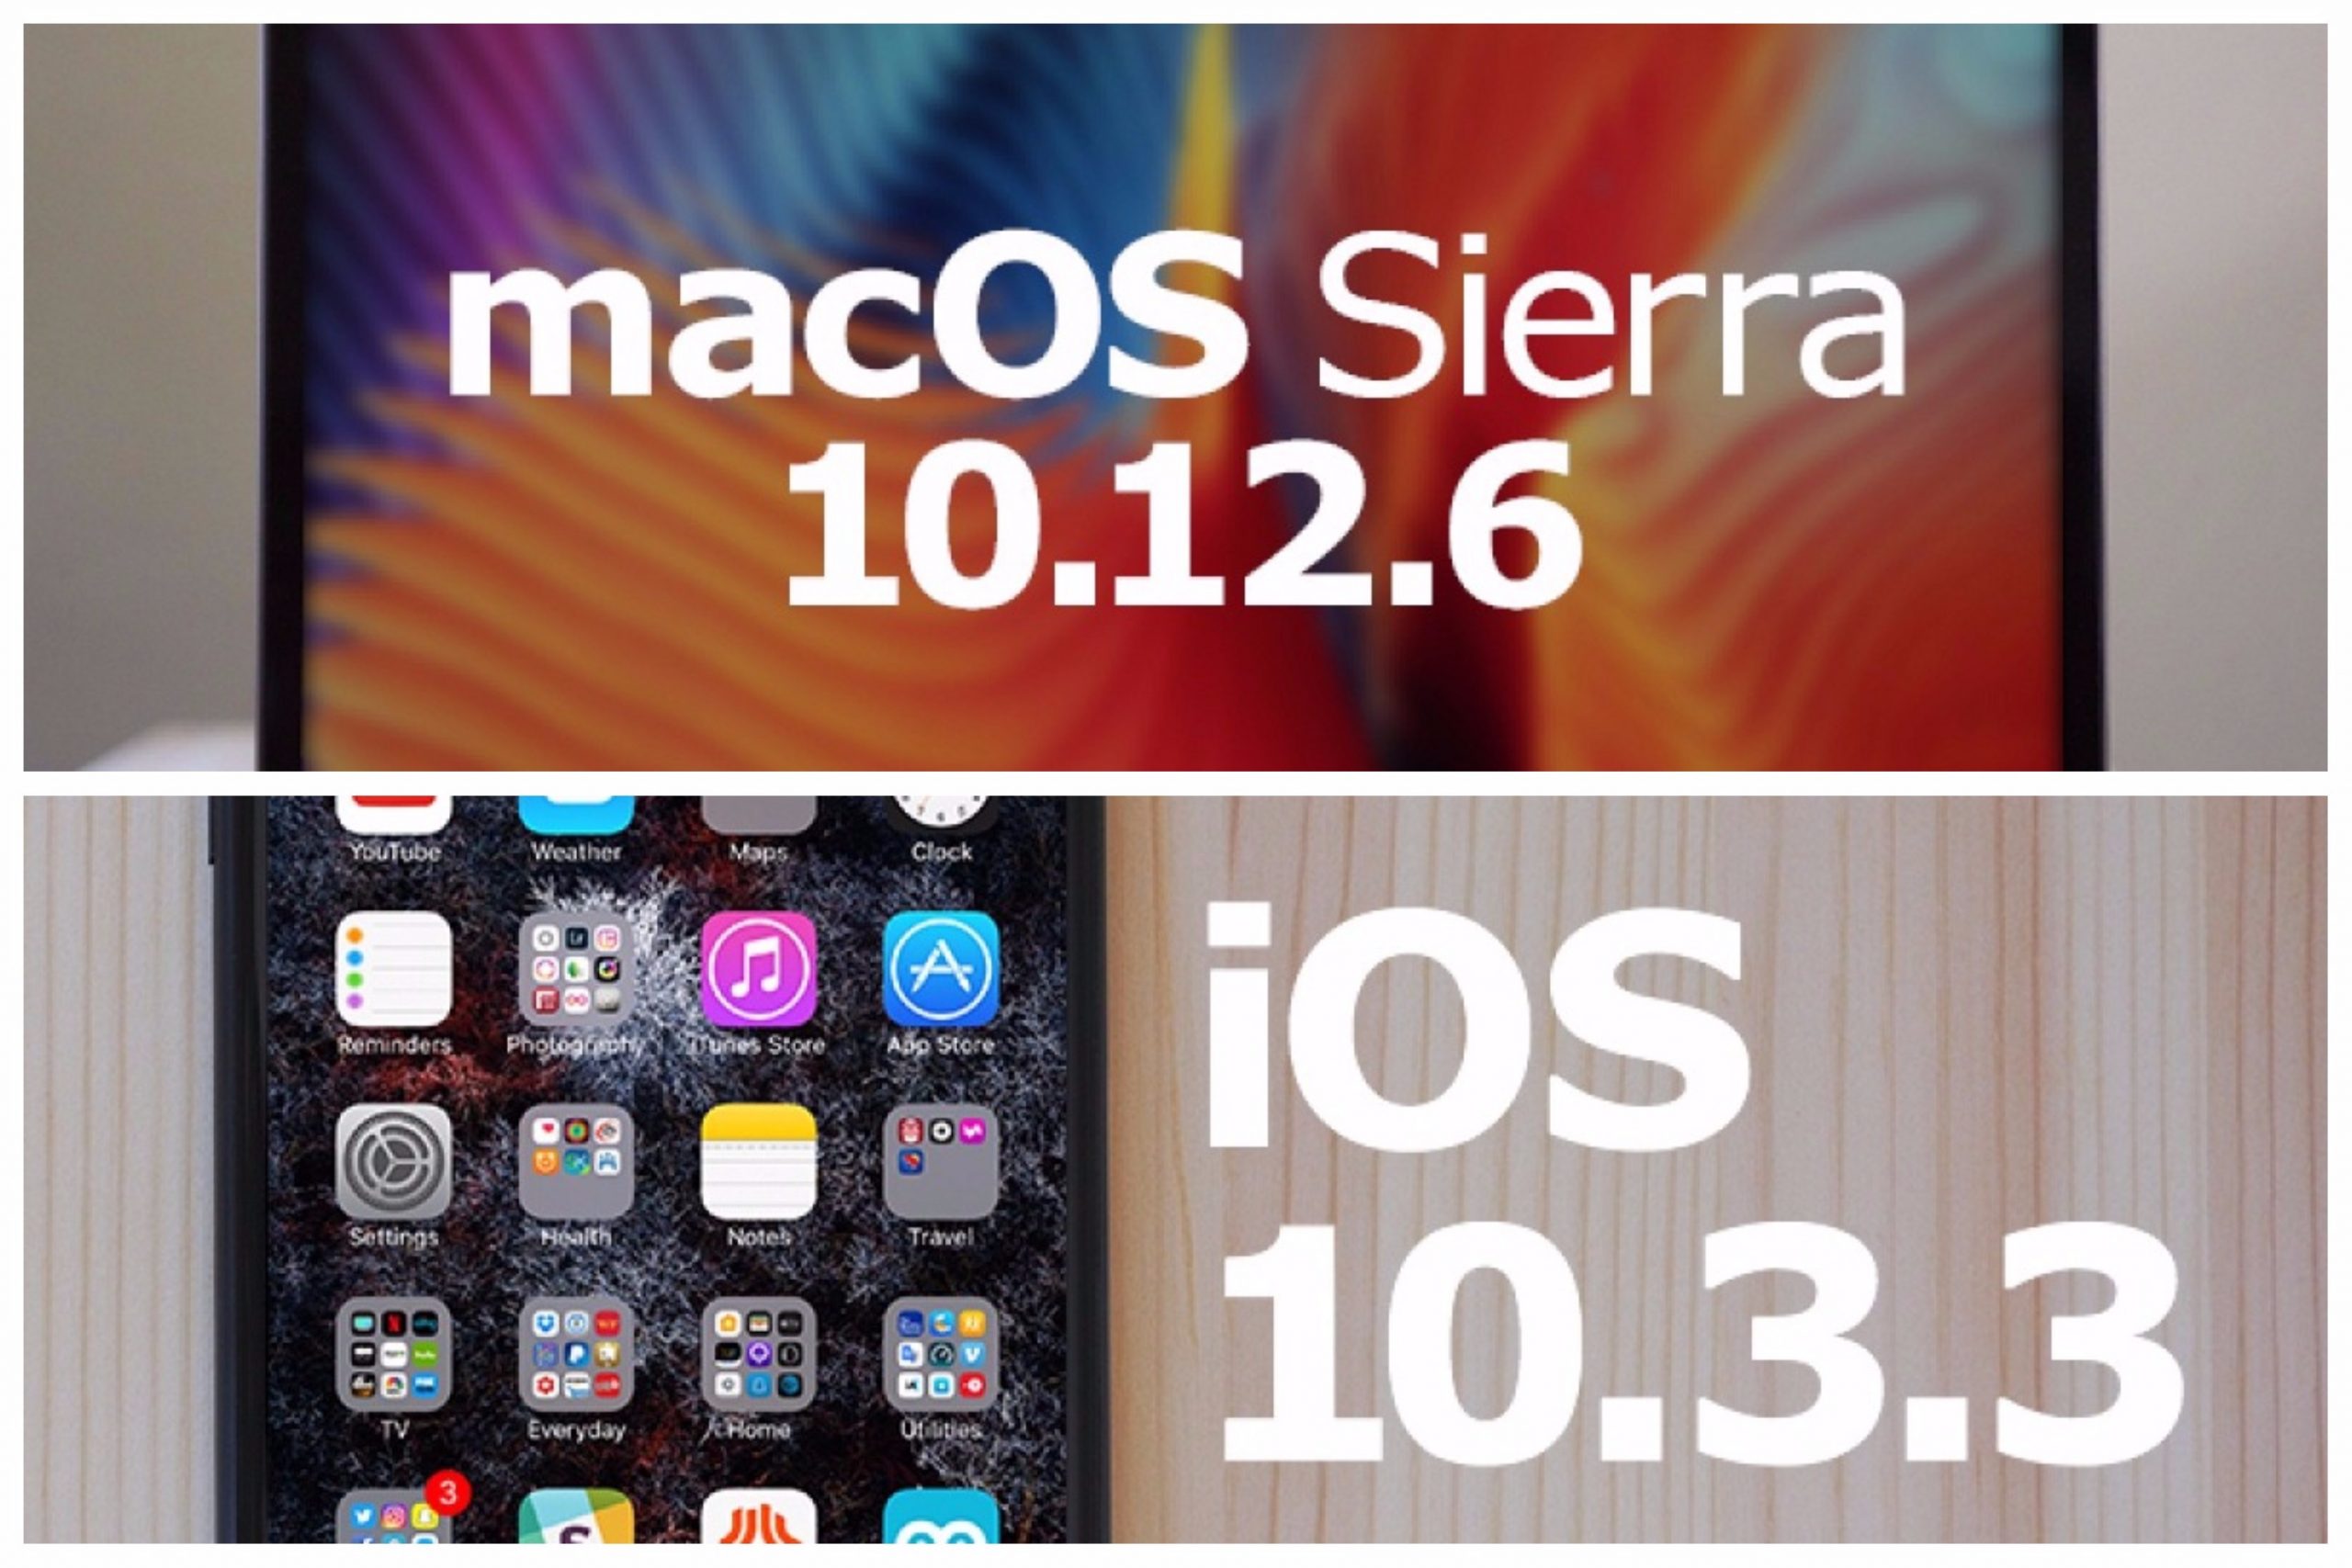 Apple phát hành bản cập nhật iOS 10.3.3 và macOS 10.12.6, mời tải về